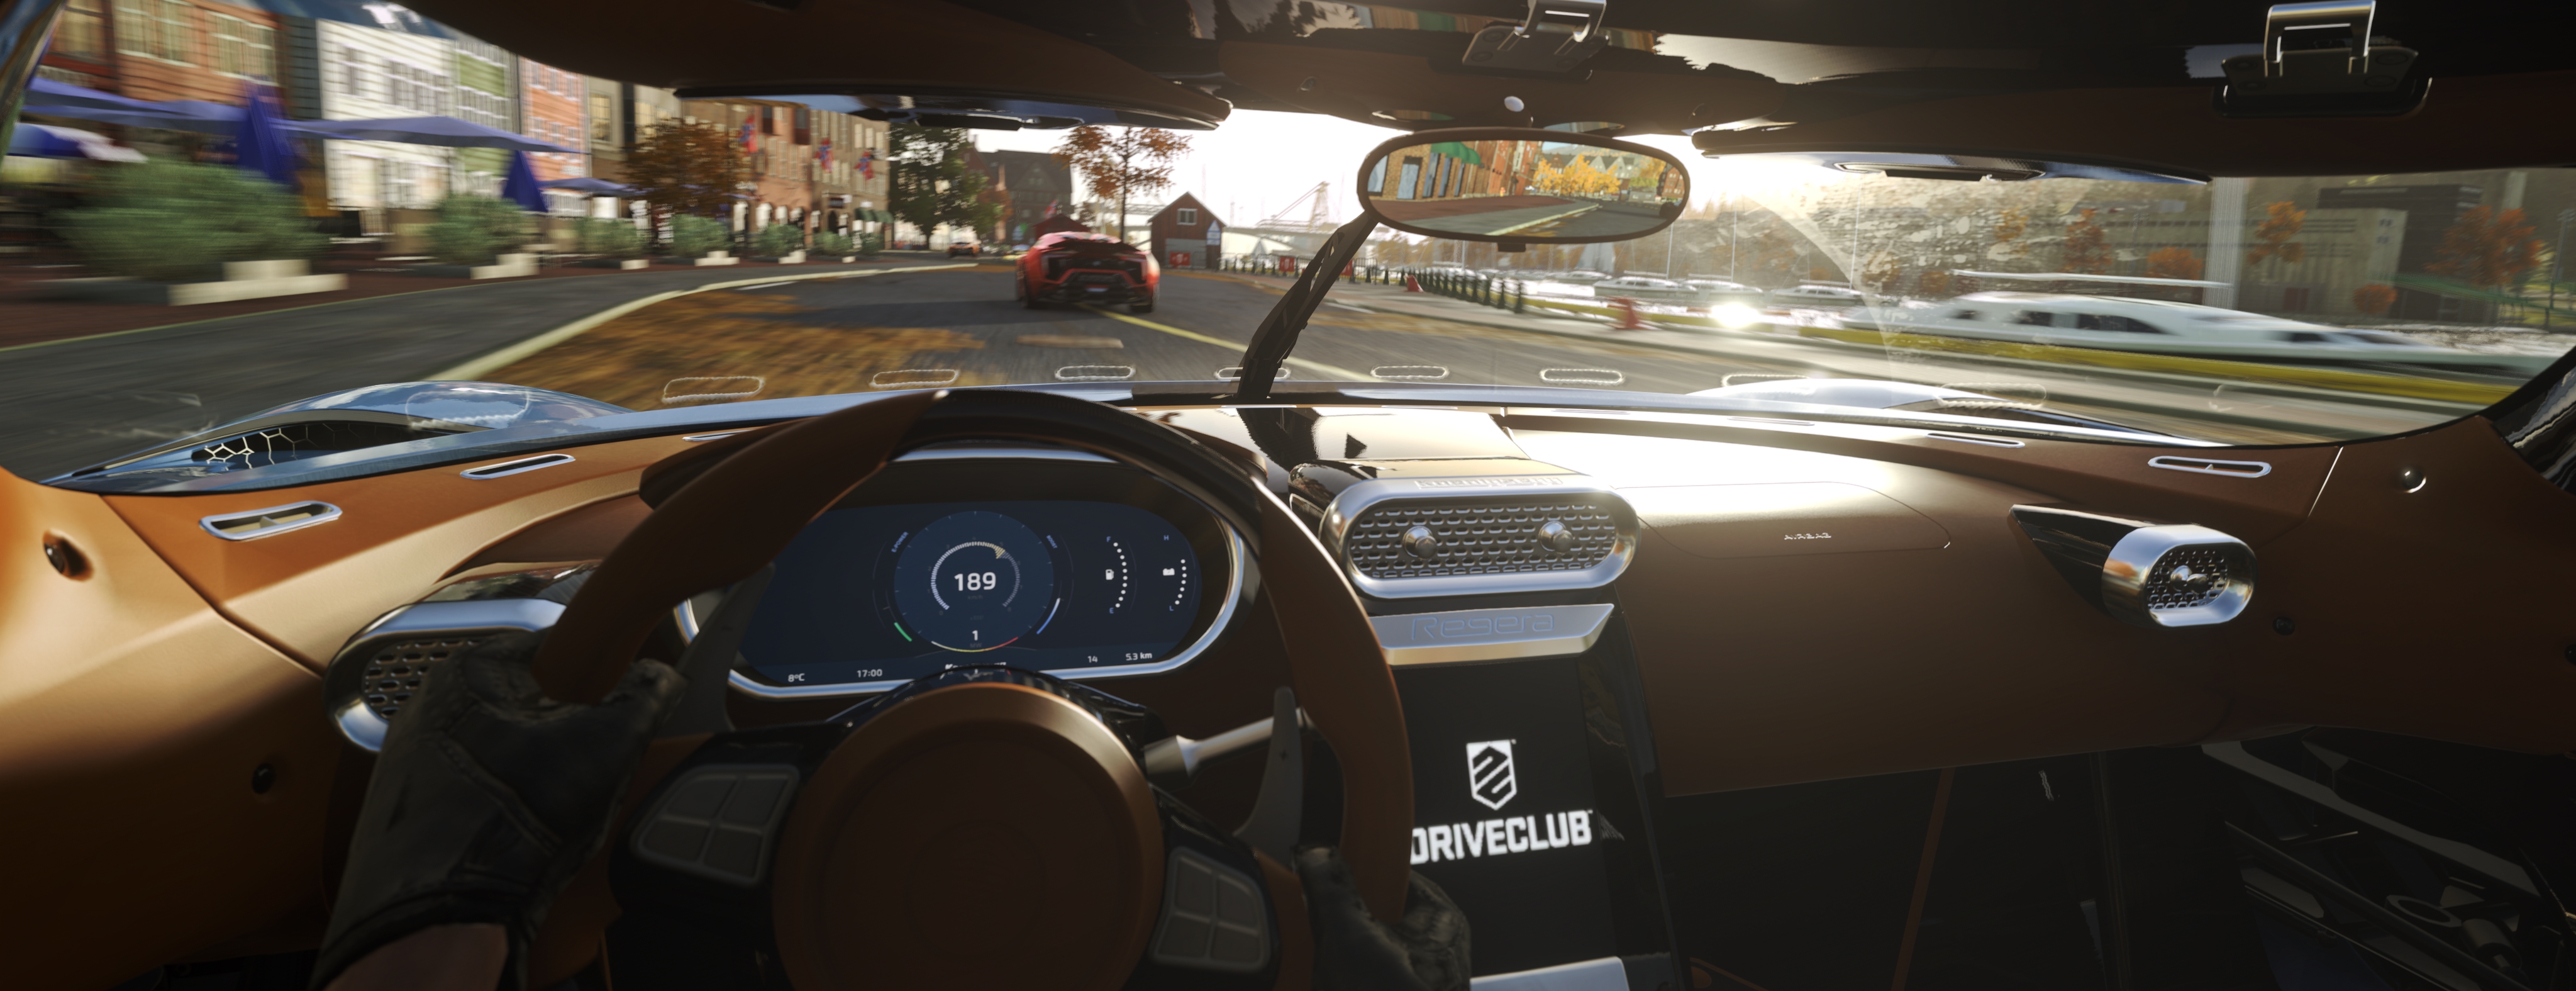 Driveclub VR for PlayStation 2016 - Gematsu